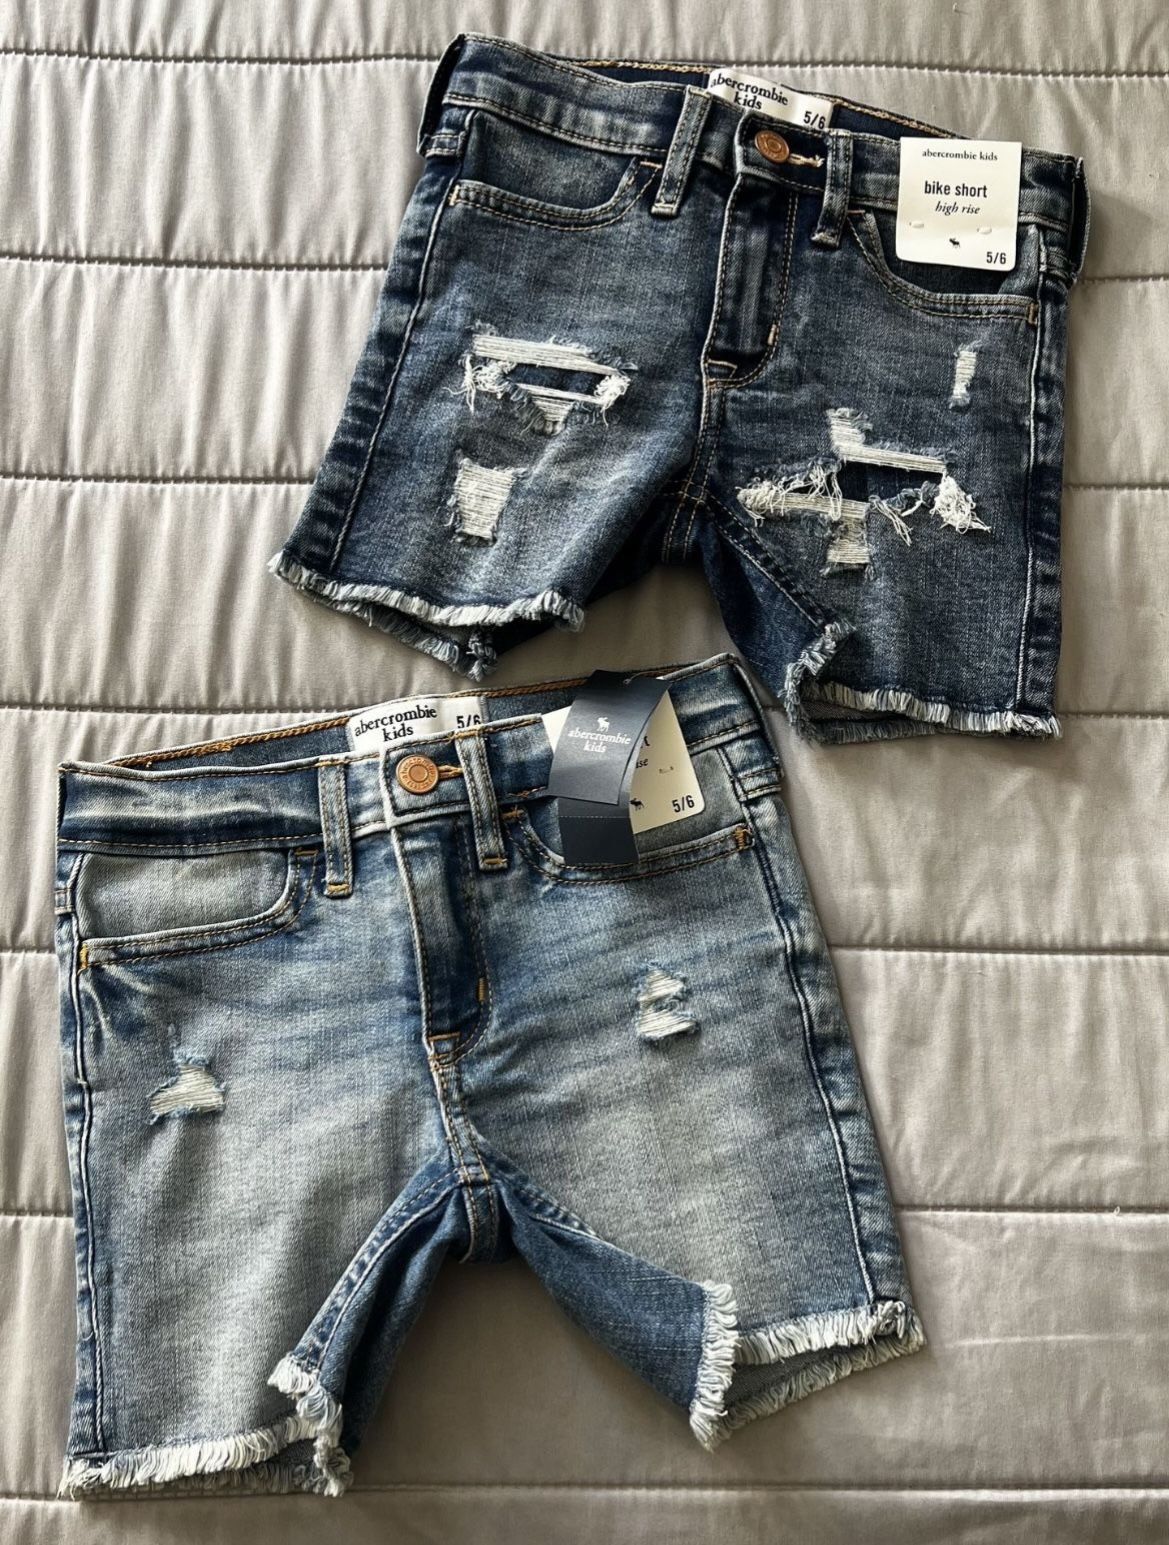 GIRLS “abercrombie kids” jean biker shorts $30 for both